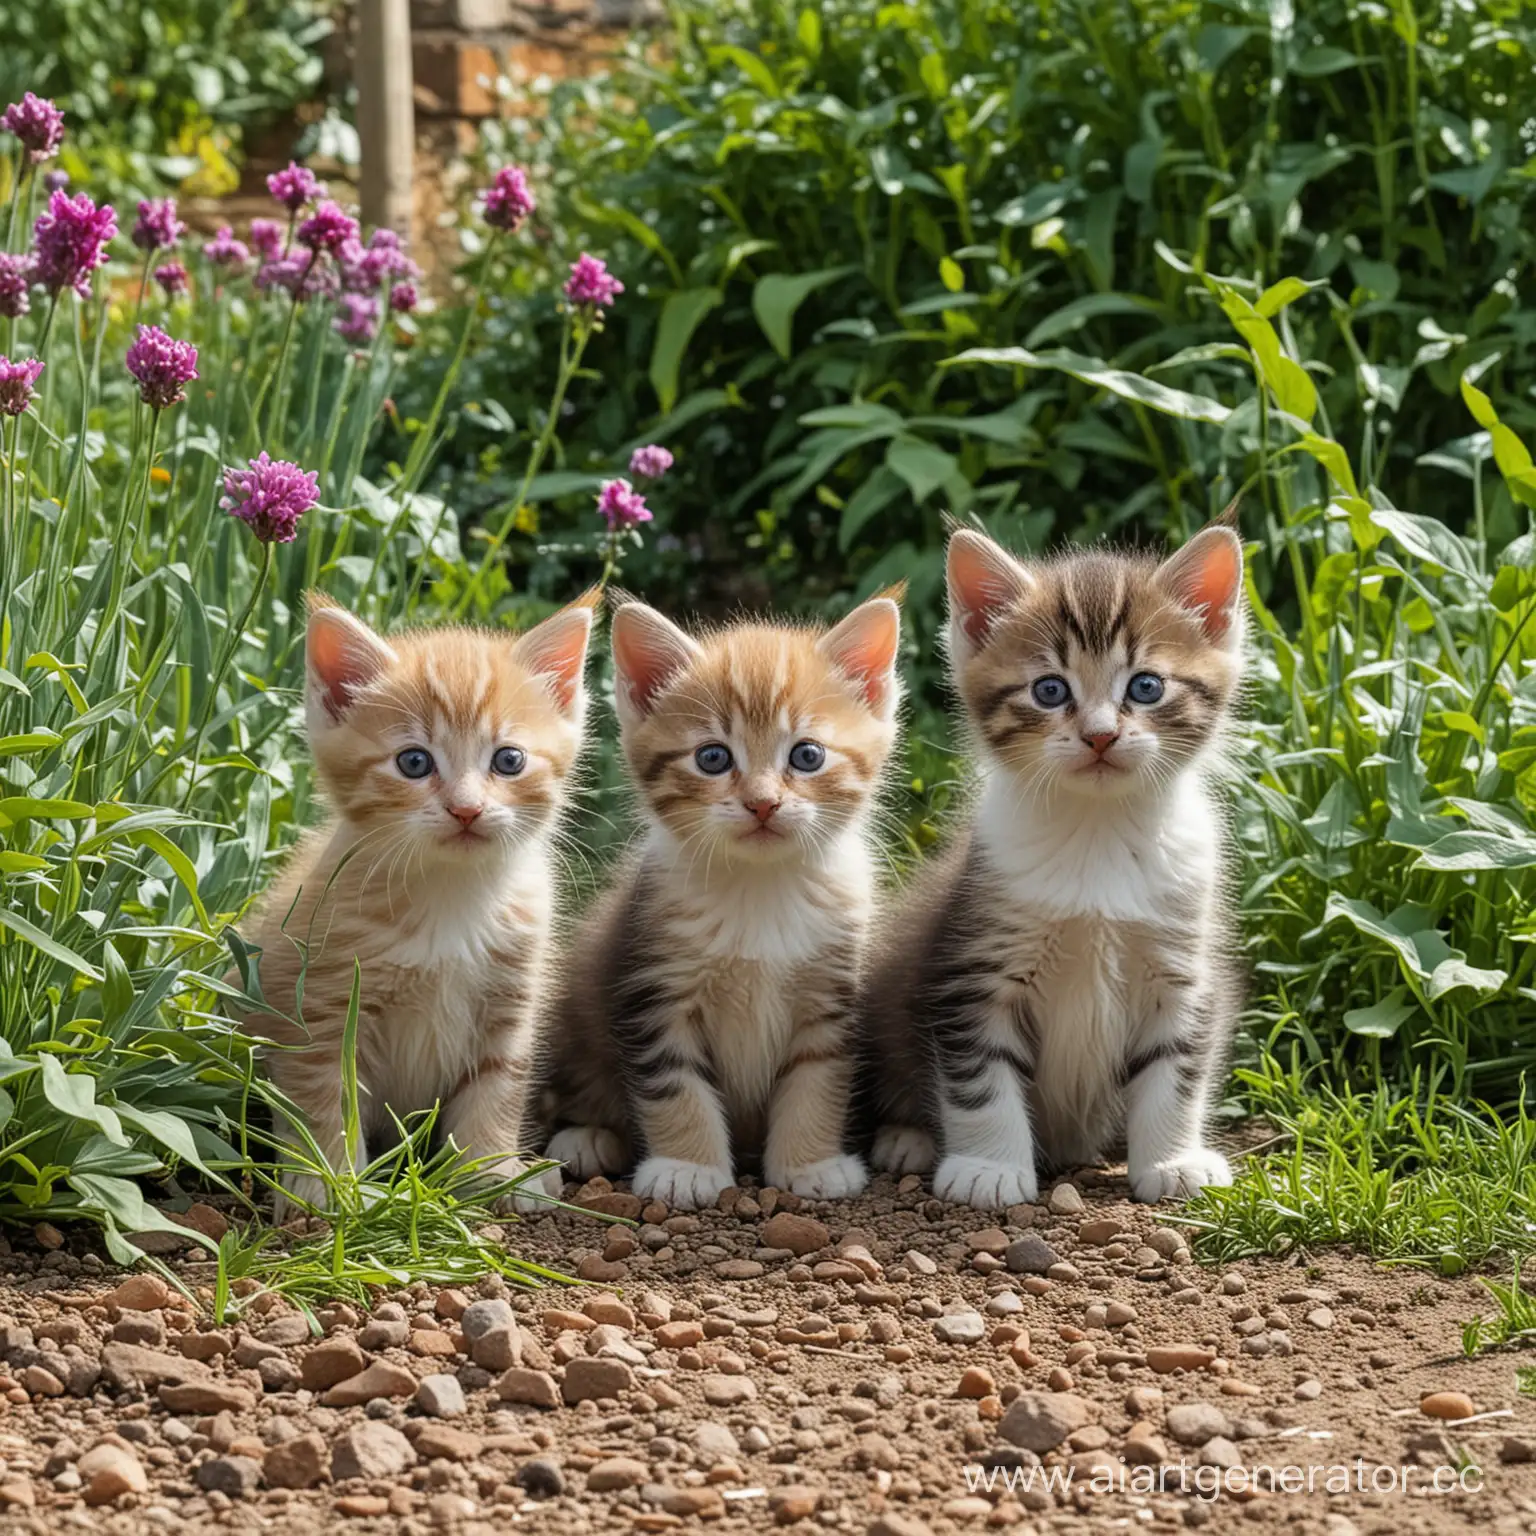 Playful-Kittens-Exploring-a-Lush-Garden